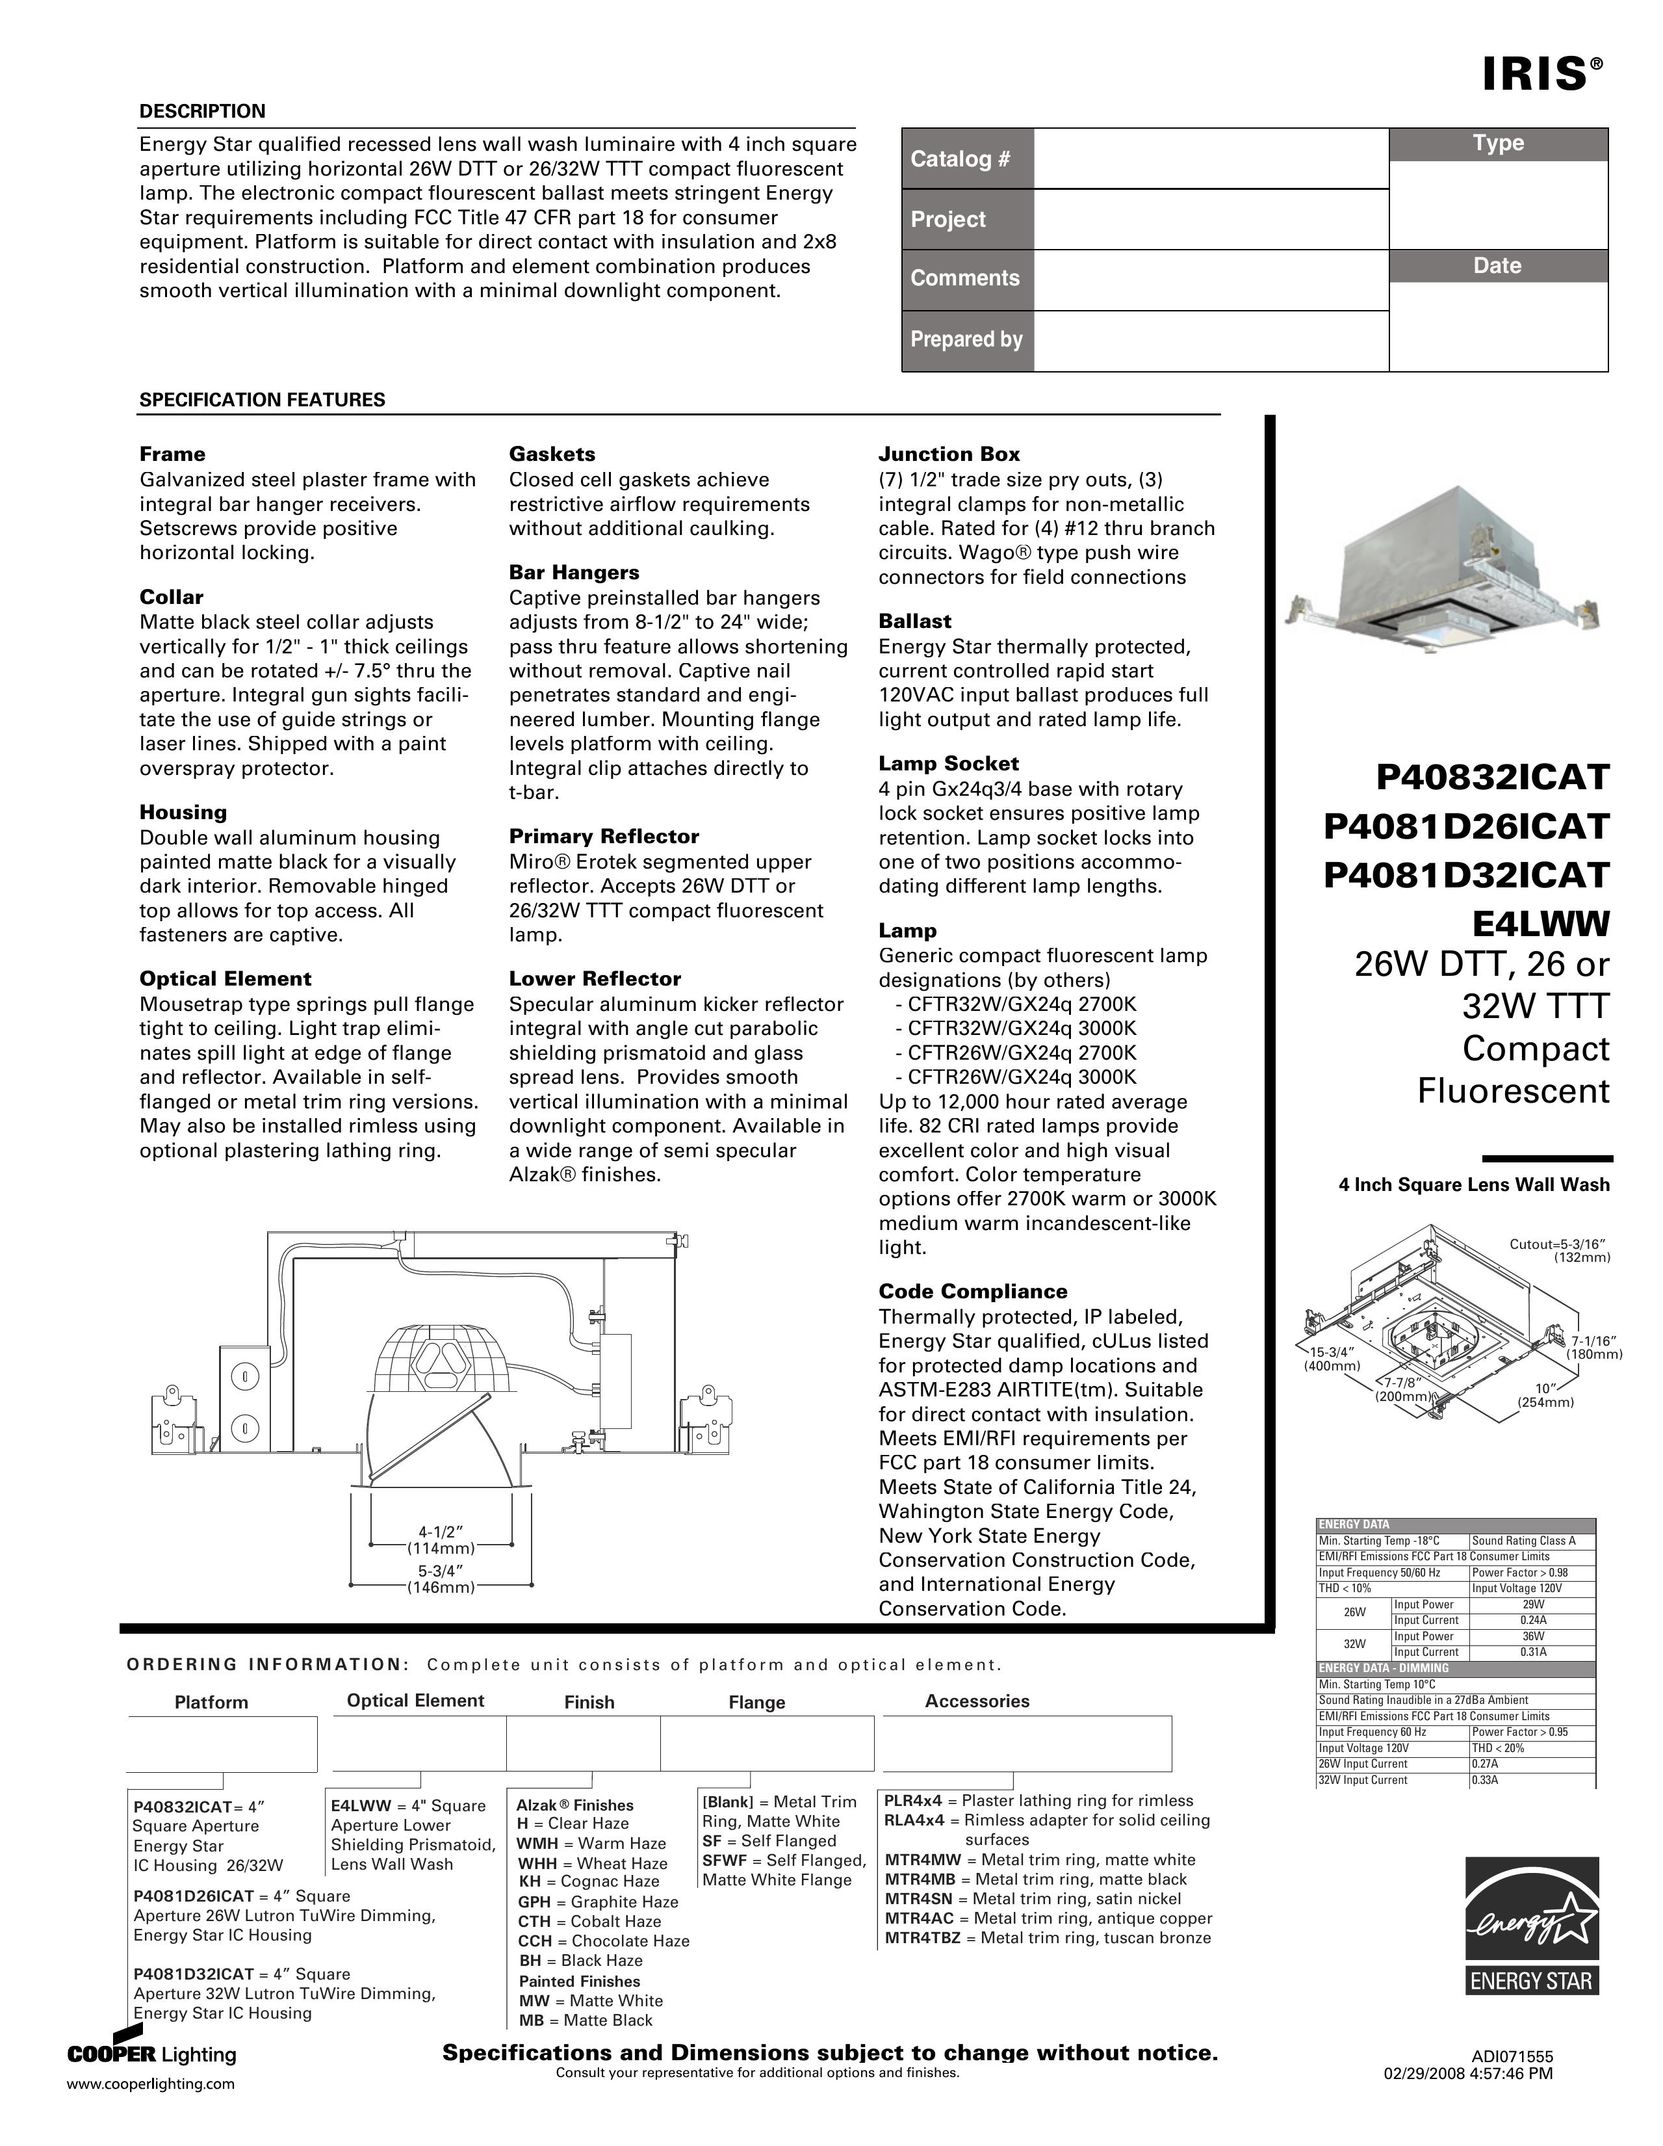 IRIS P4081D26ICAT Indoor Furnishings User Manual